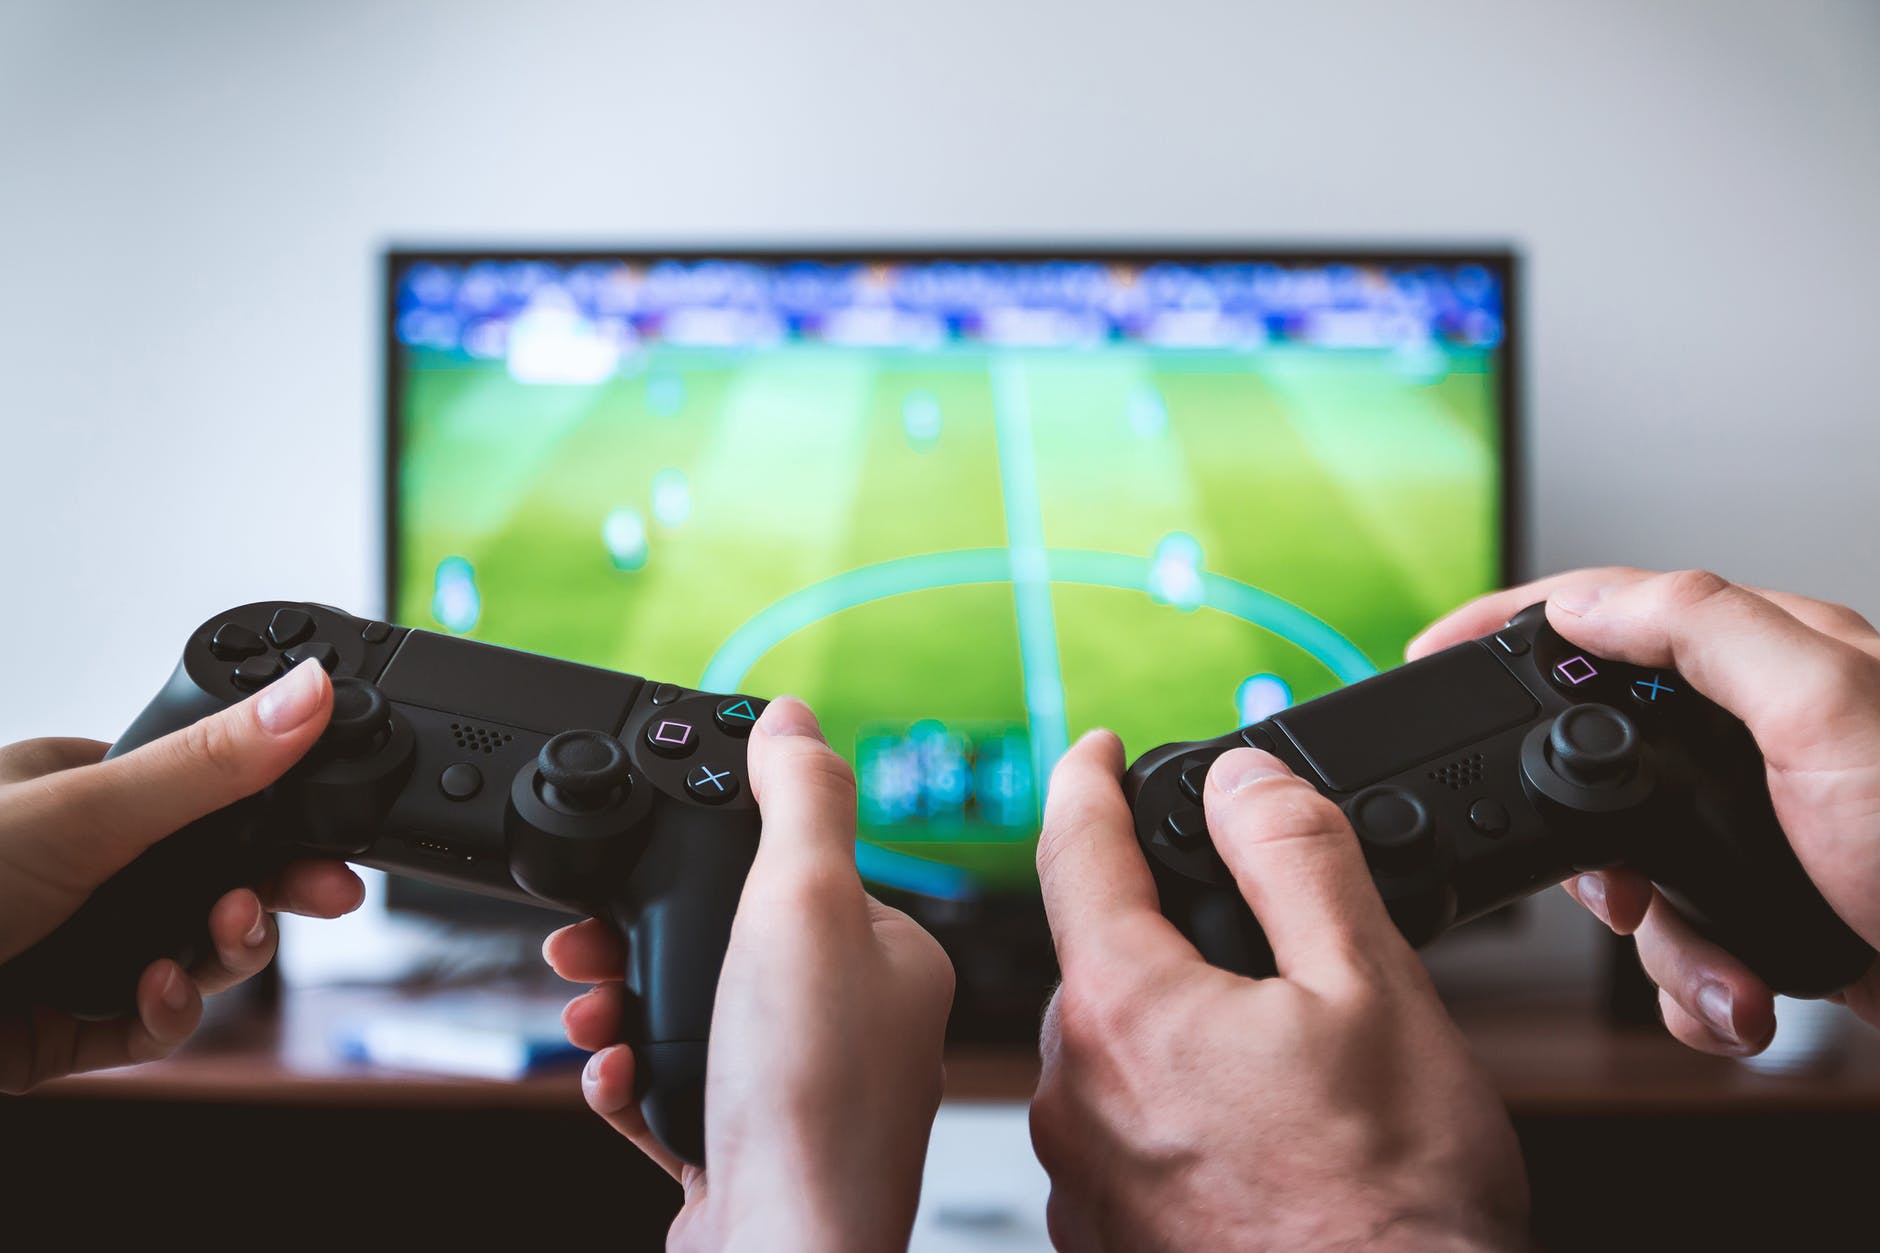 Dipendenza da videogiochi elencata come principale disturbo della salute mentale dall'OMS